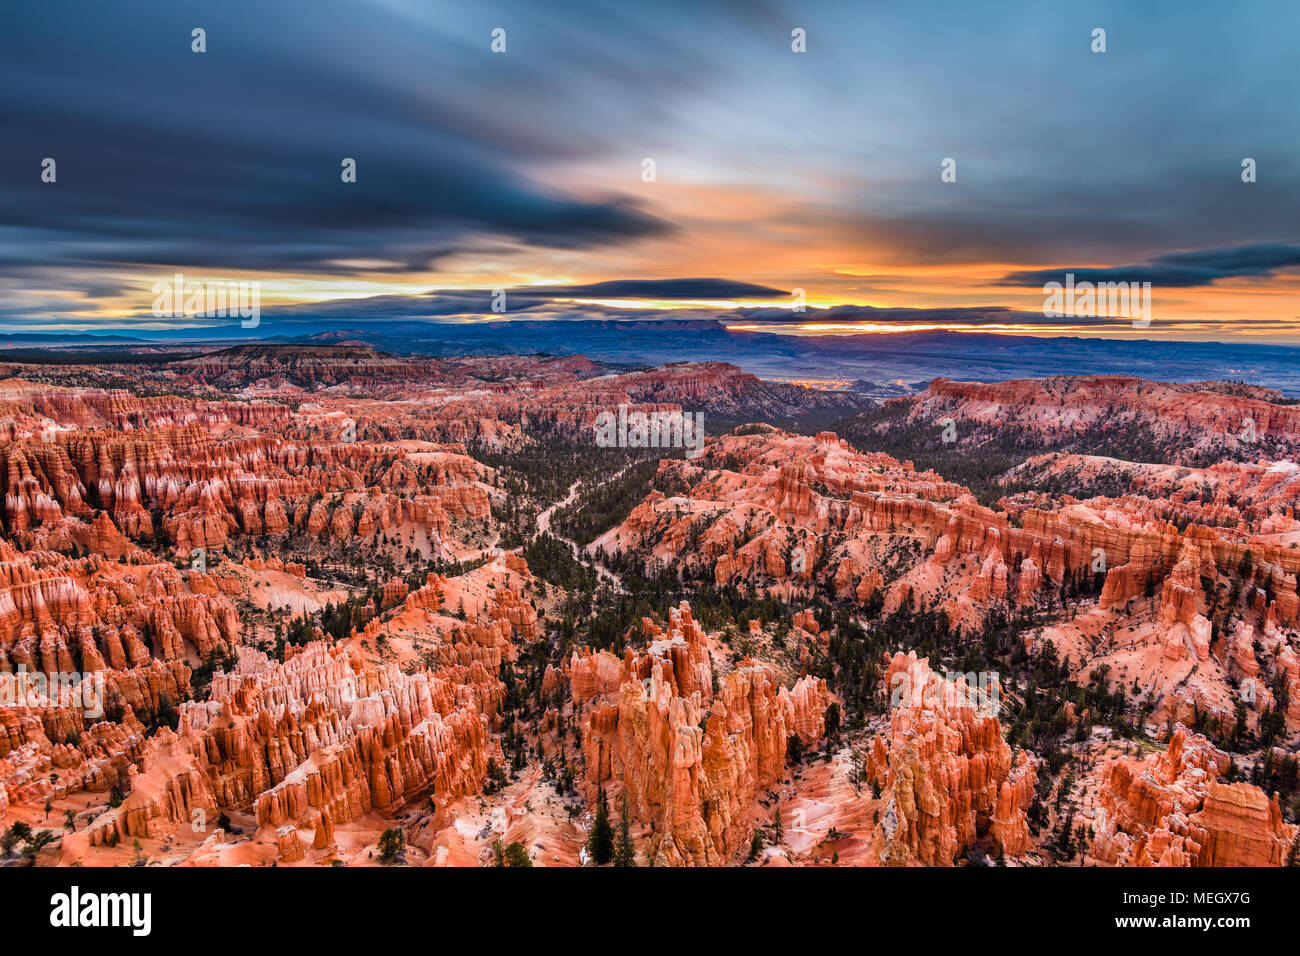 Bryce Canyon National Park, Utah, USA at dawn. Stock Photo